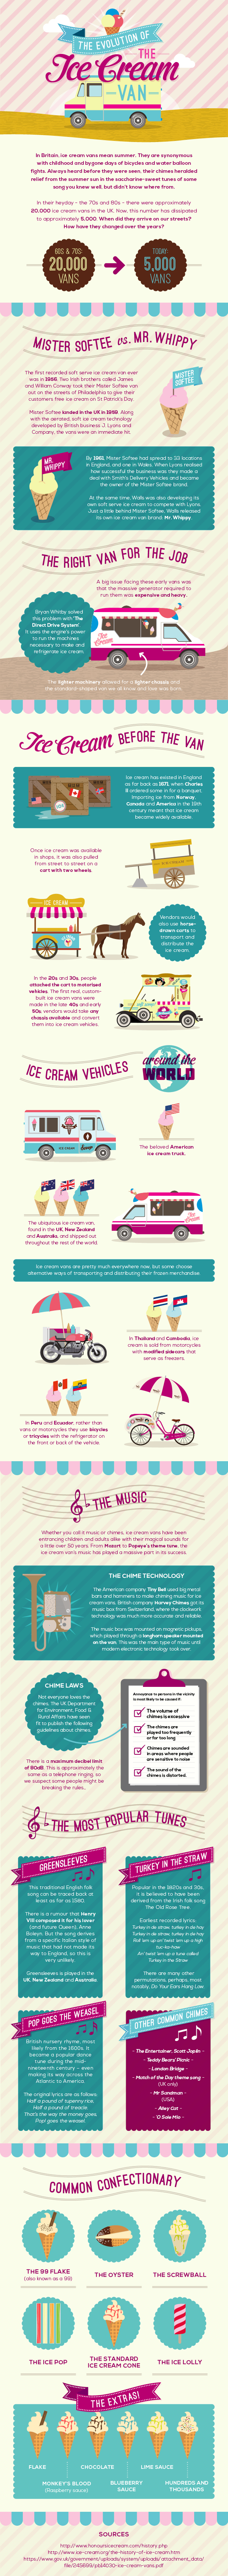 Evolution of the Ice Cream Van